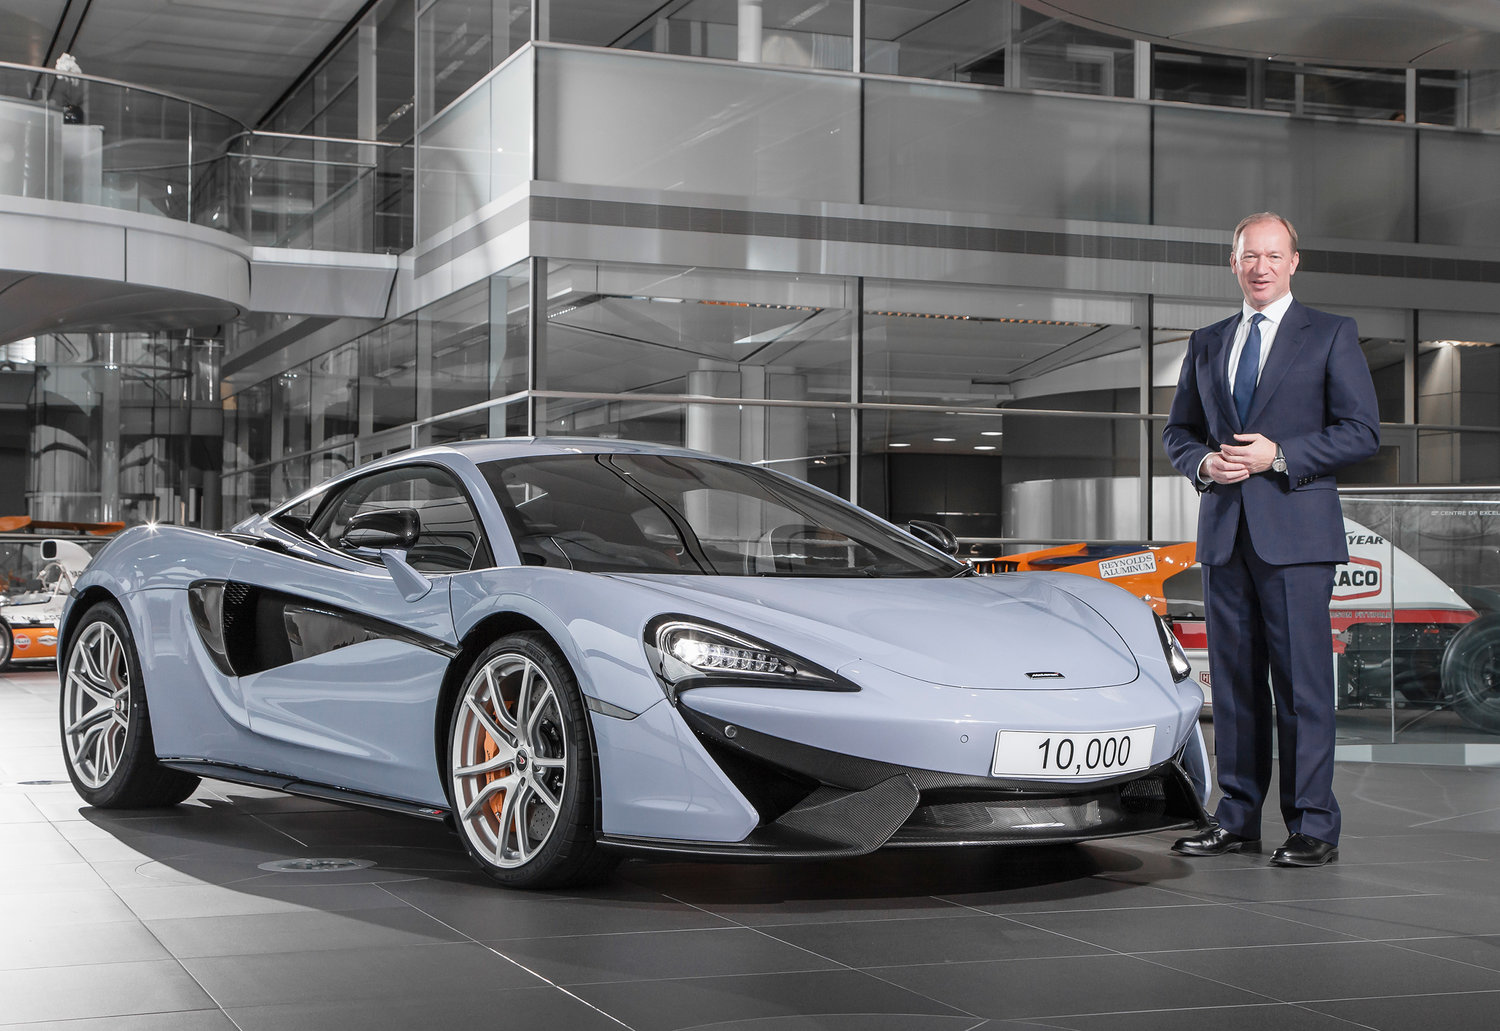 McLaren für € 239.000